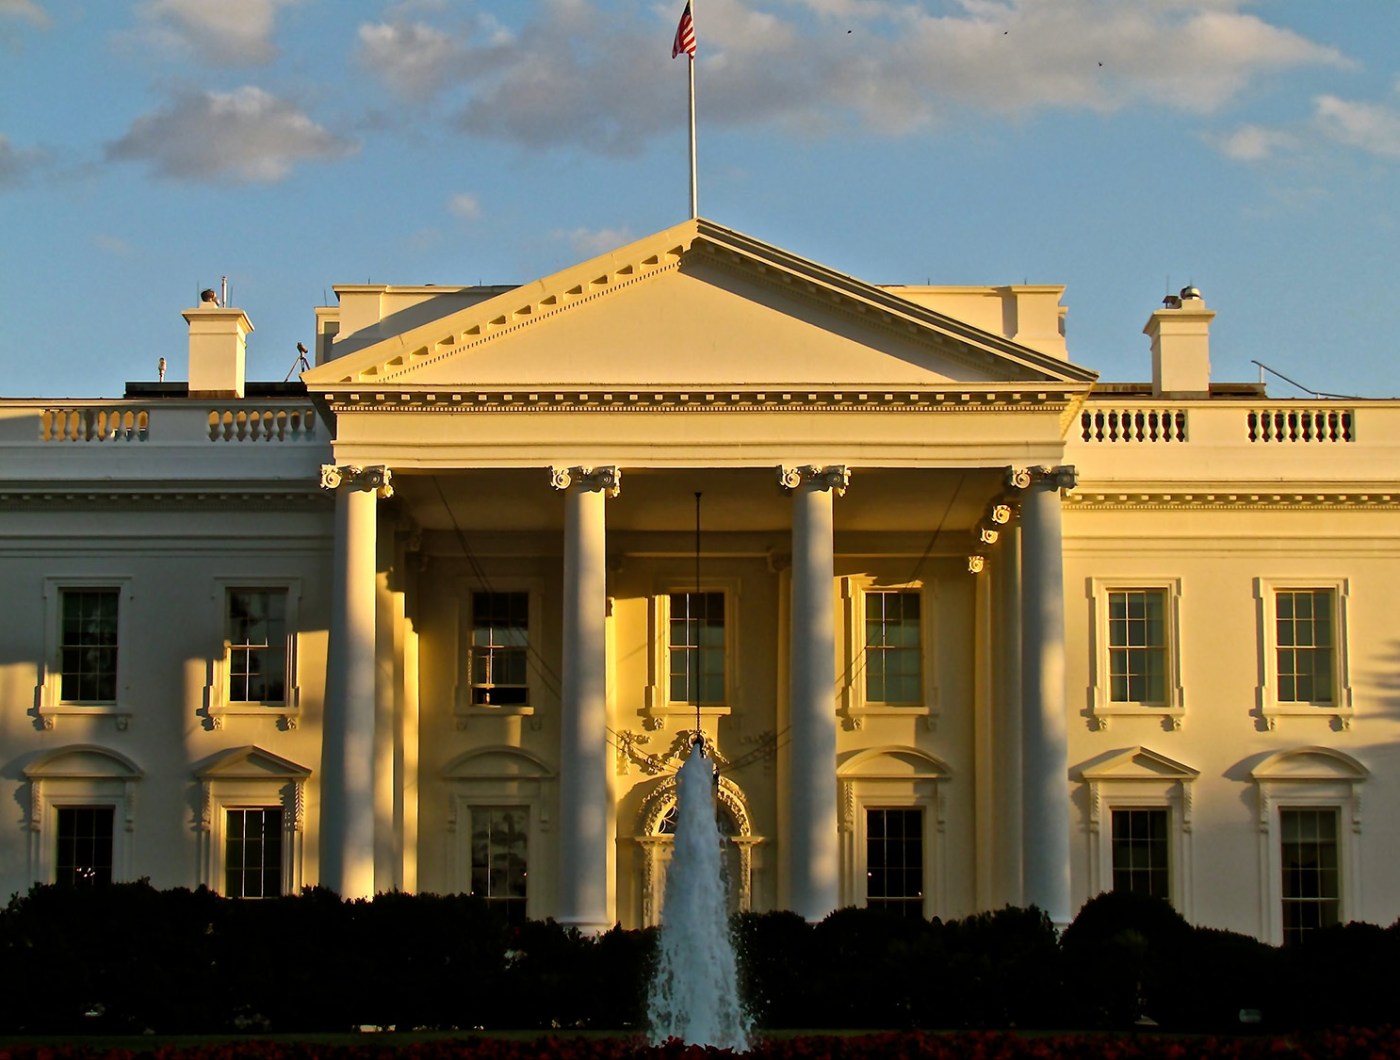 https://www.whitehouse.gov/wp-content/uploads/2021/01/white-house-sunrise.jpg?w=1400&h=1060&crop=1